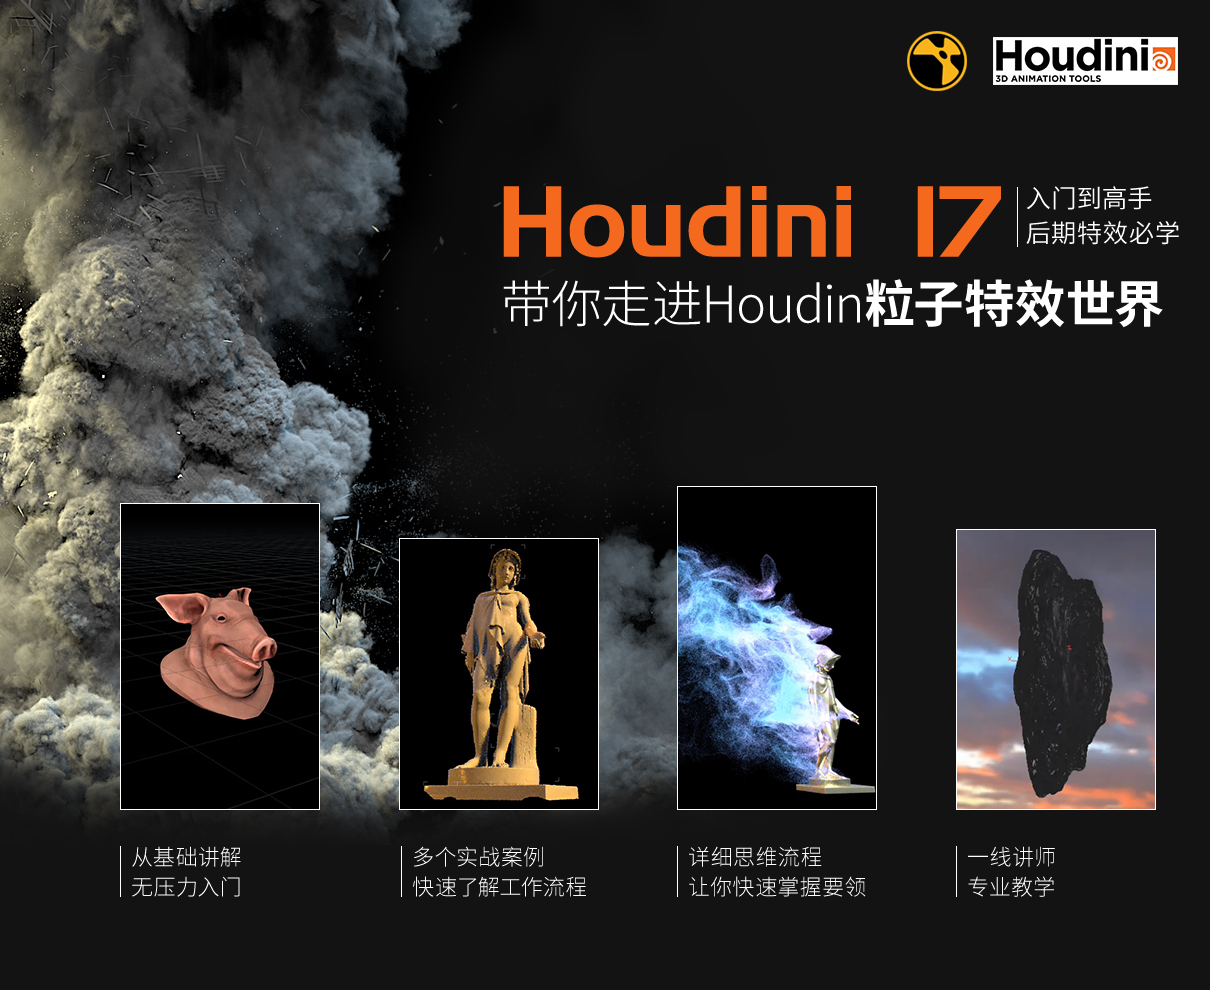 Houdini17从入门到高手教学